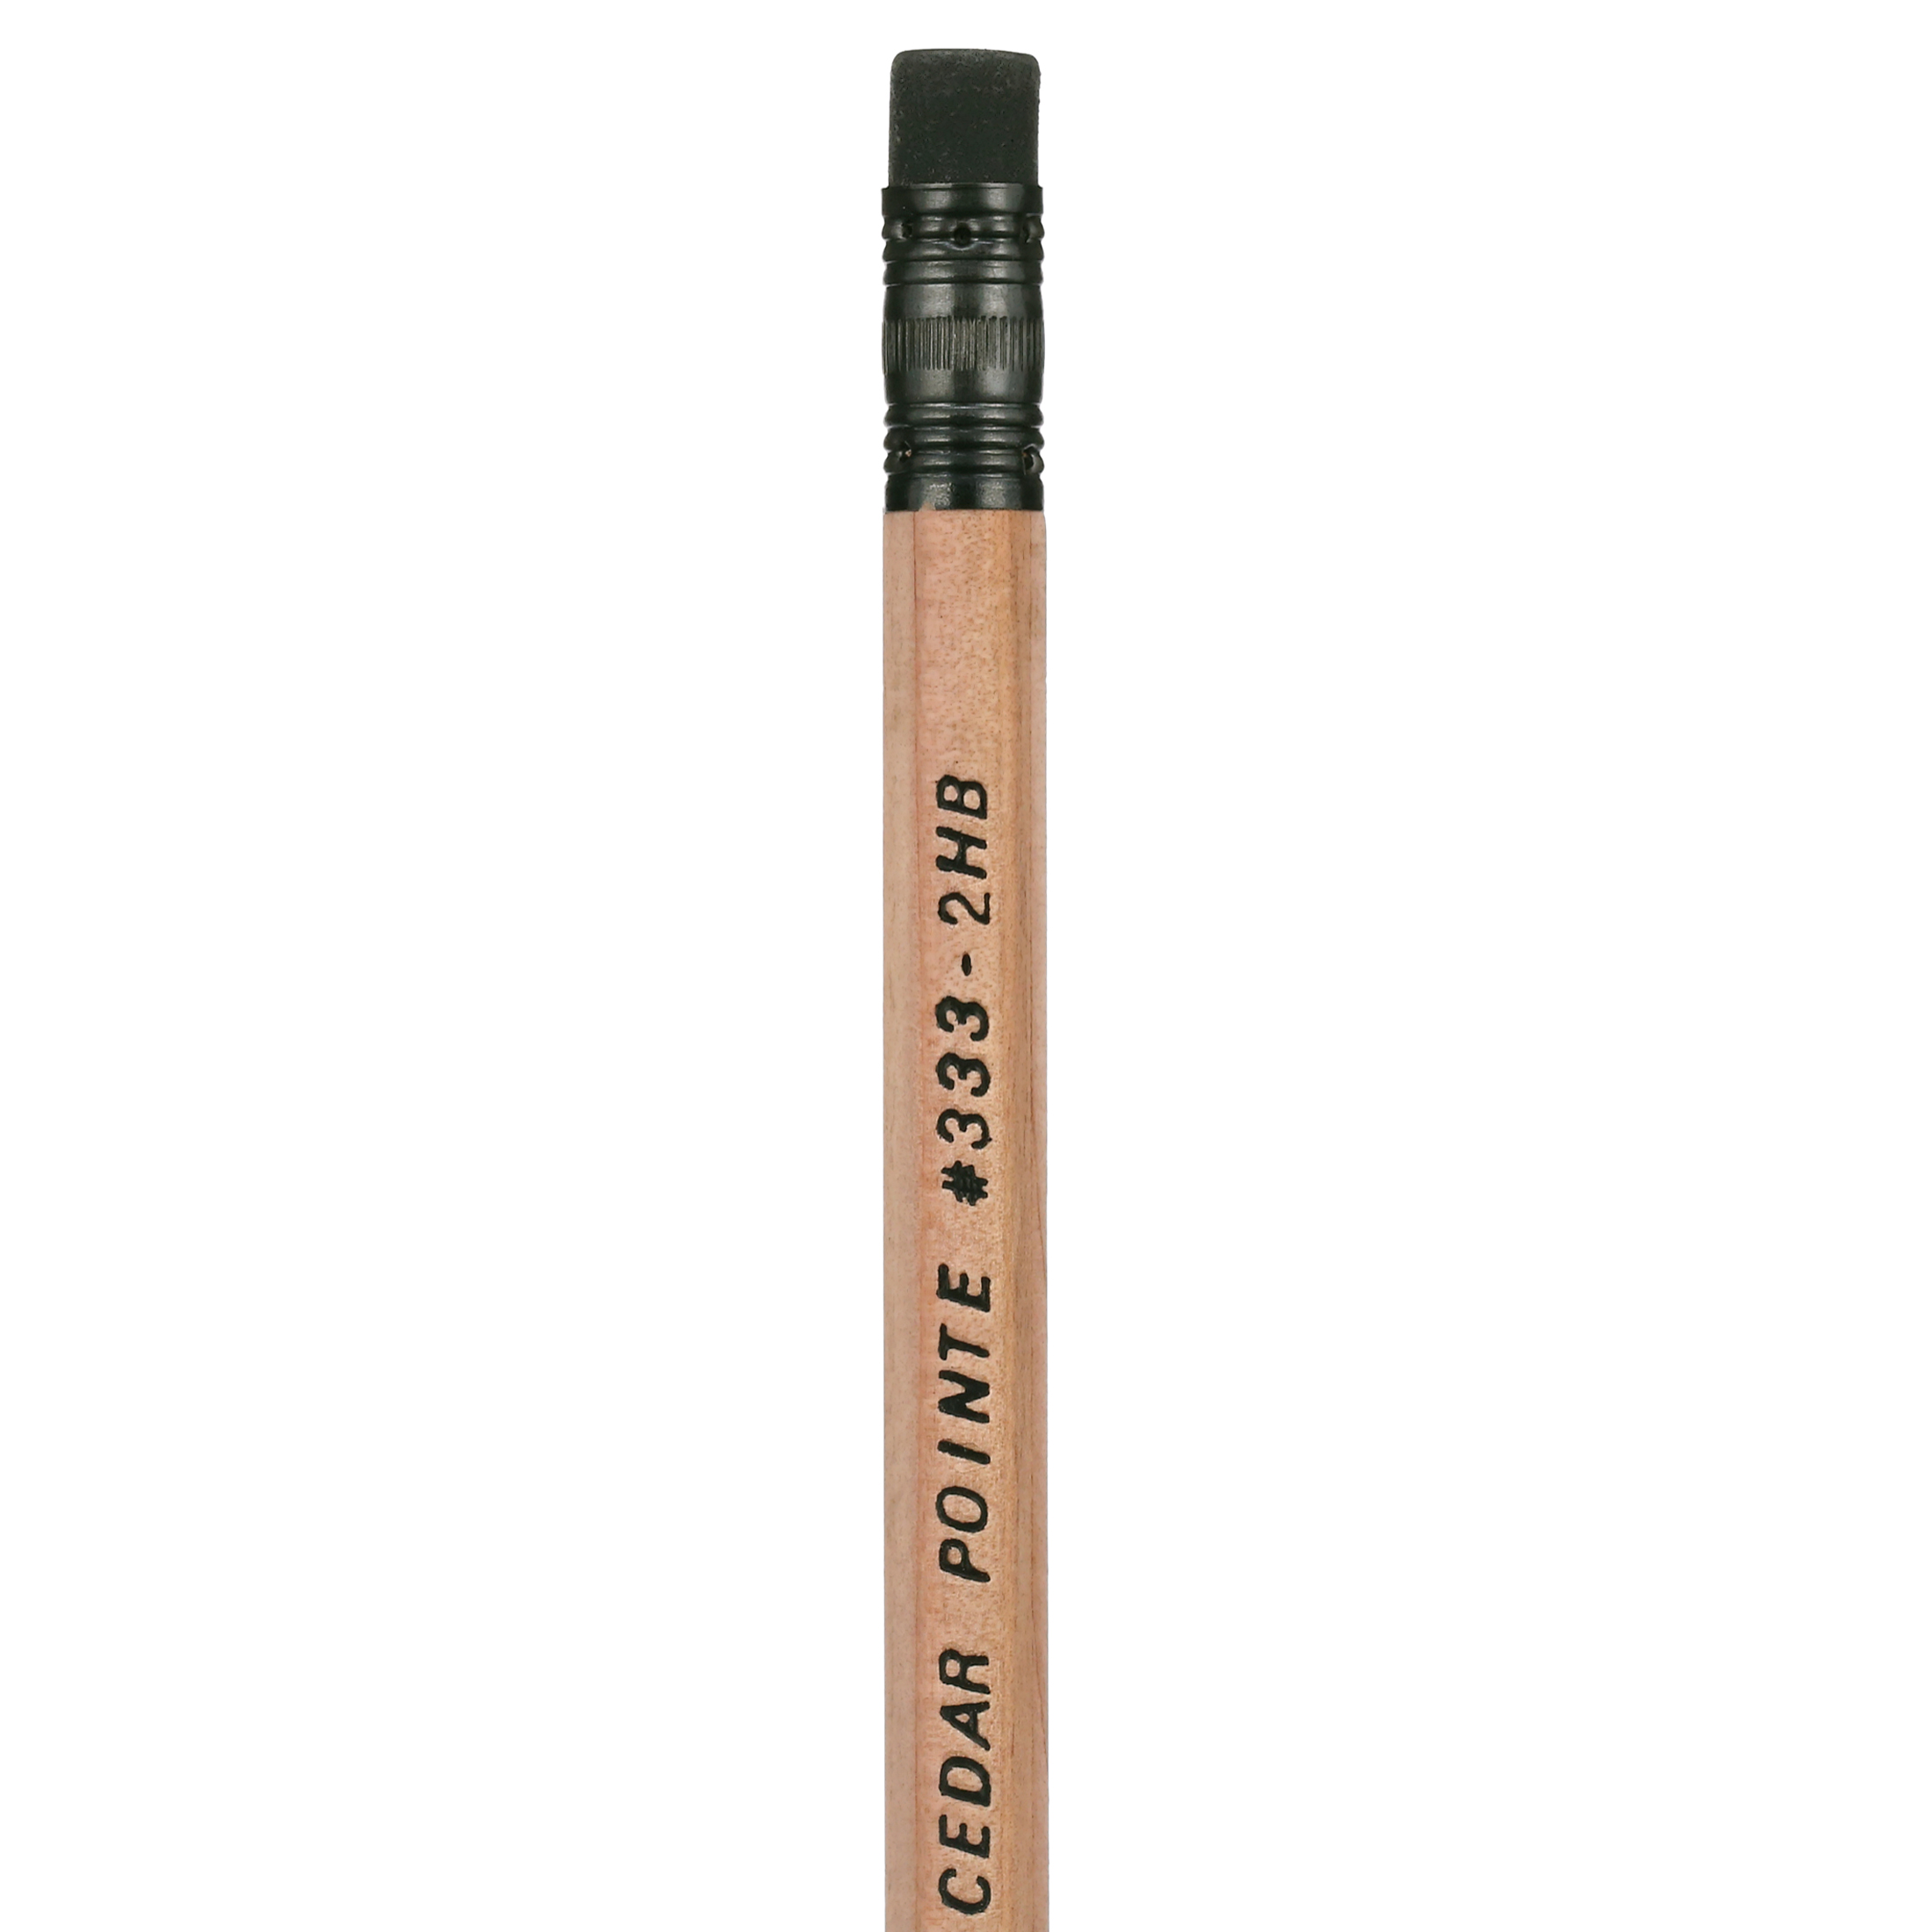 General Pencil Cedar Pointe No. 2 Pencils - image 4 of 6